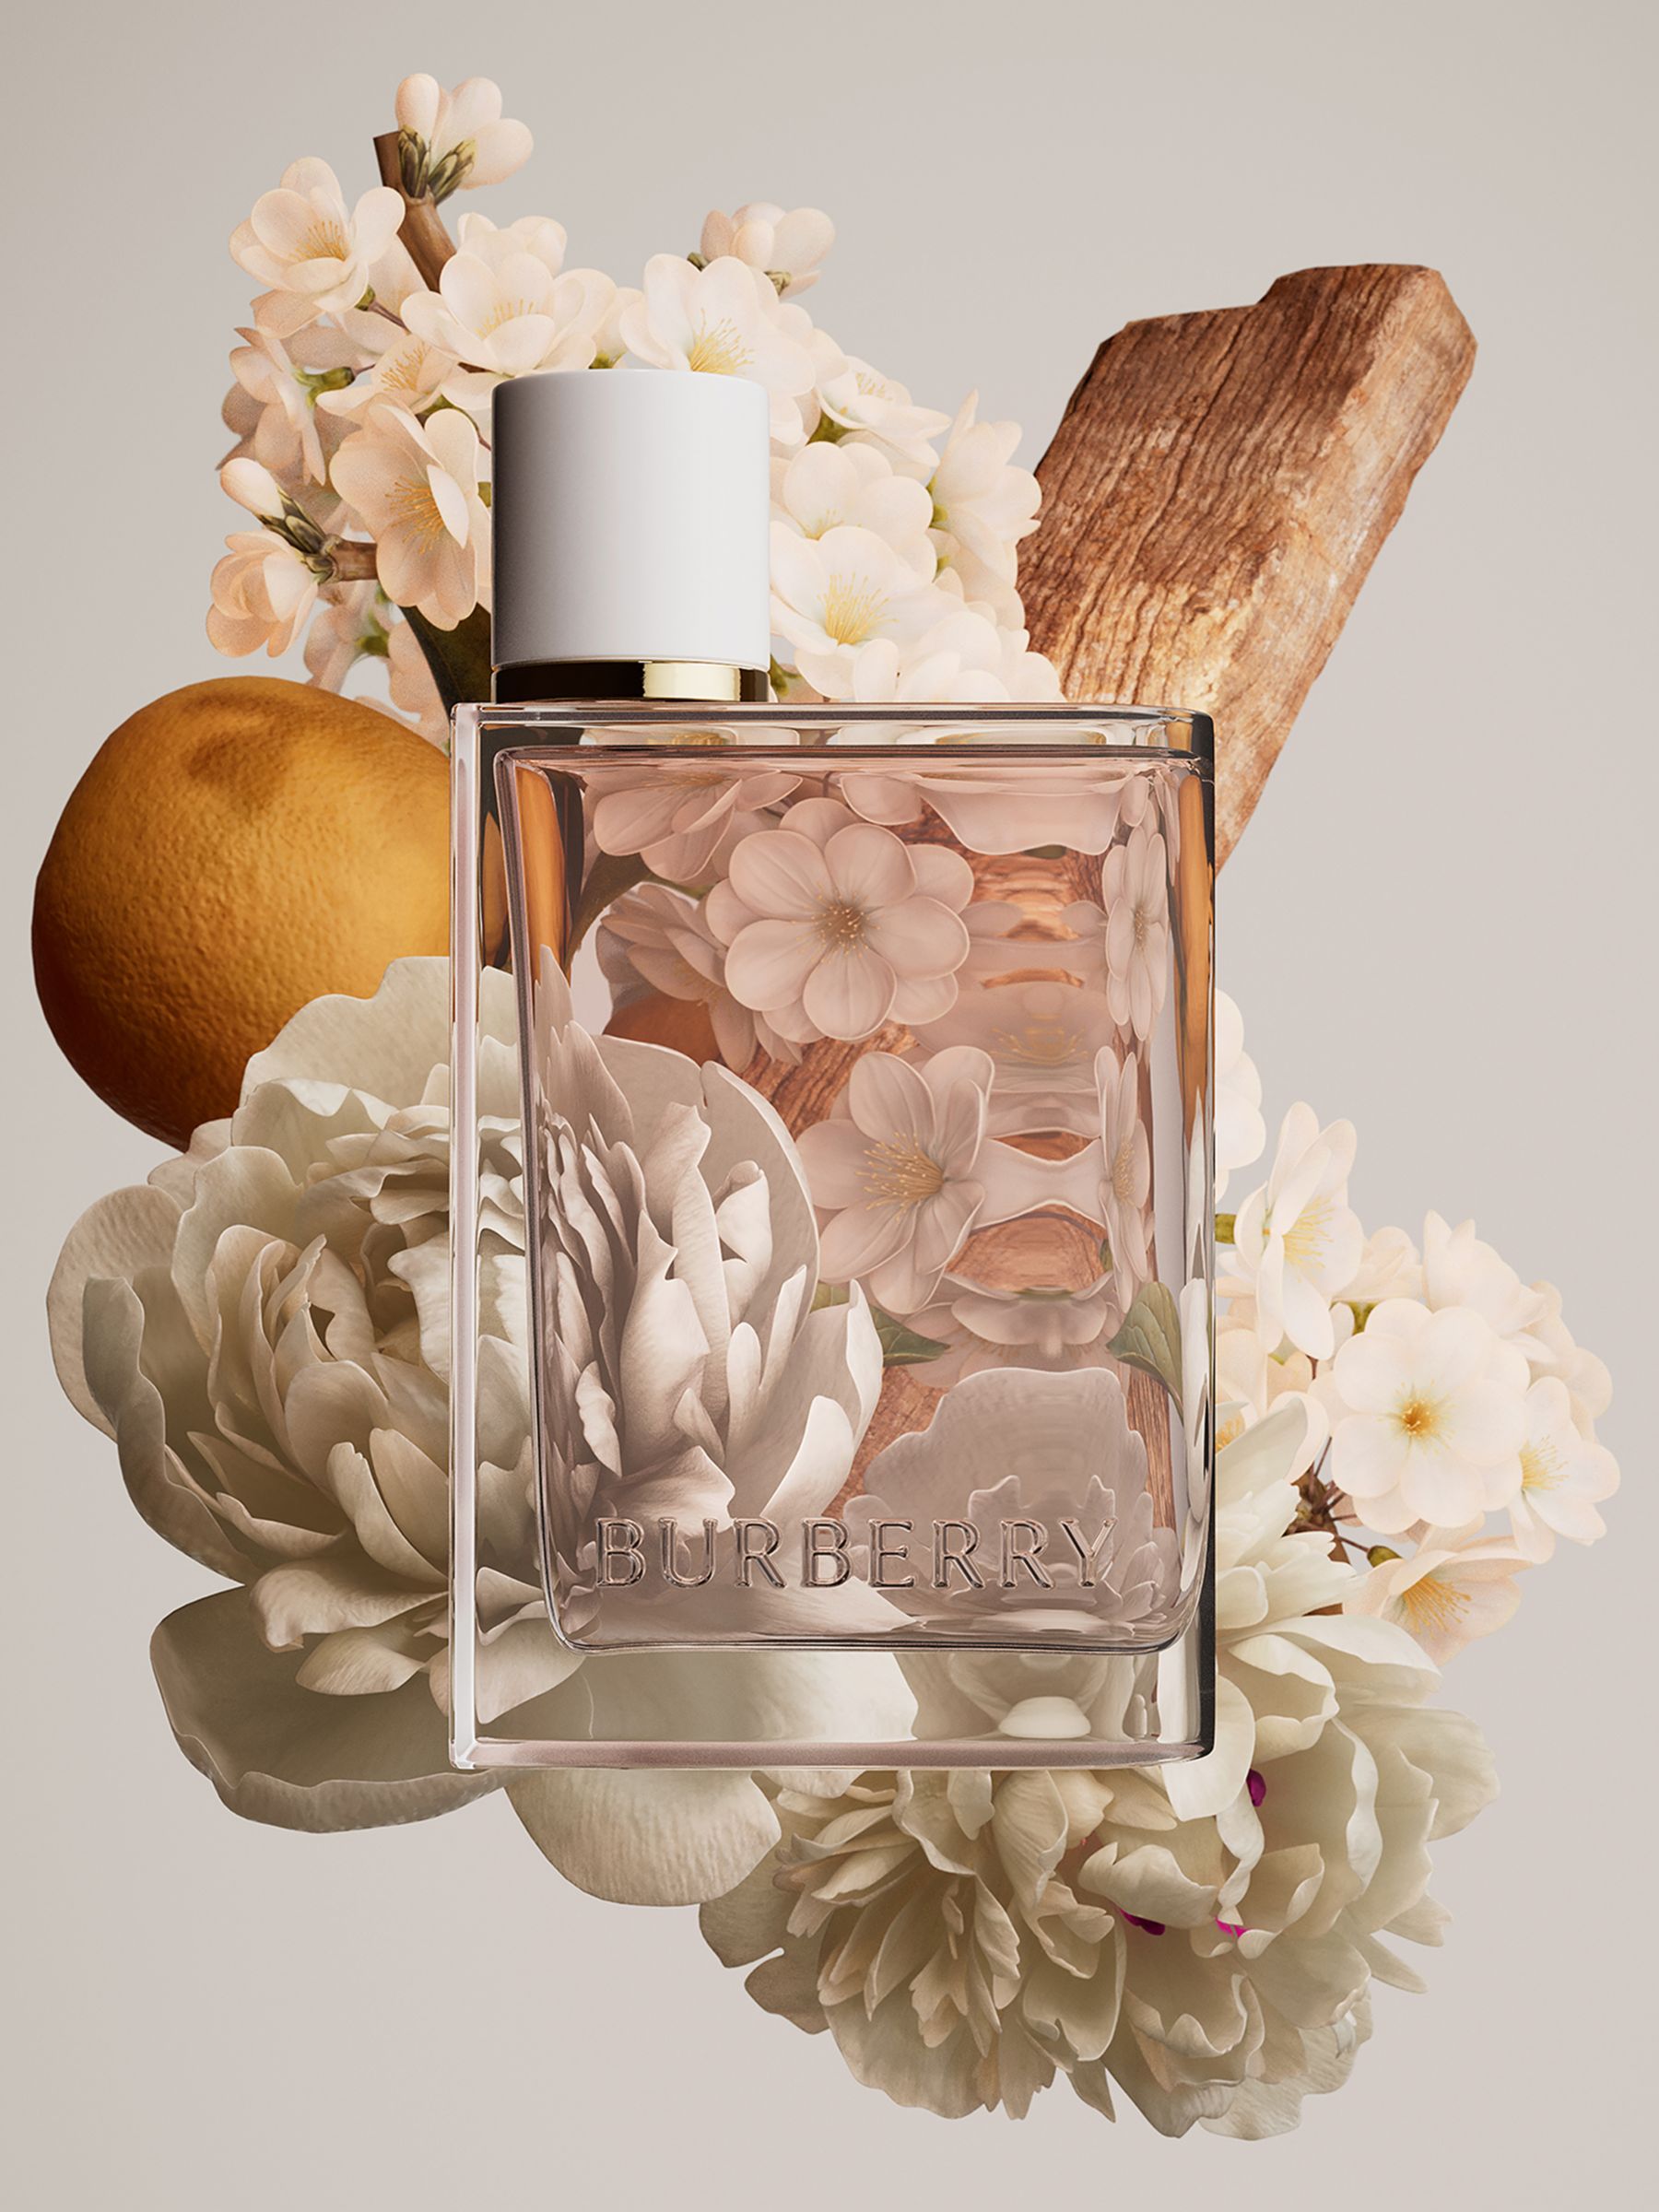 burberry her blossom perfume